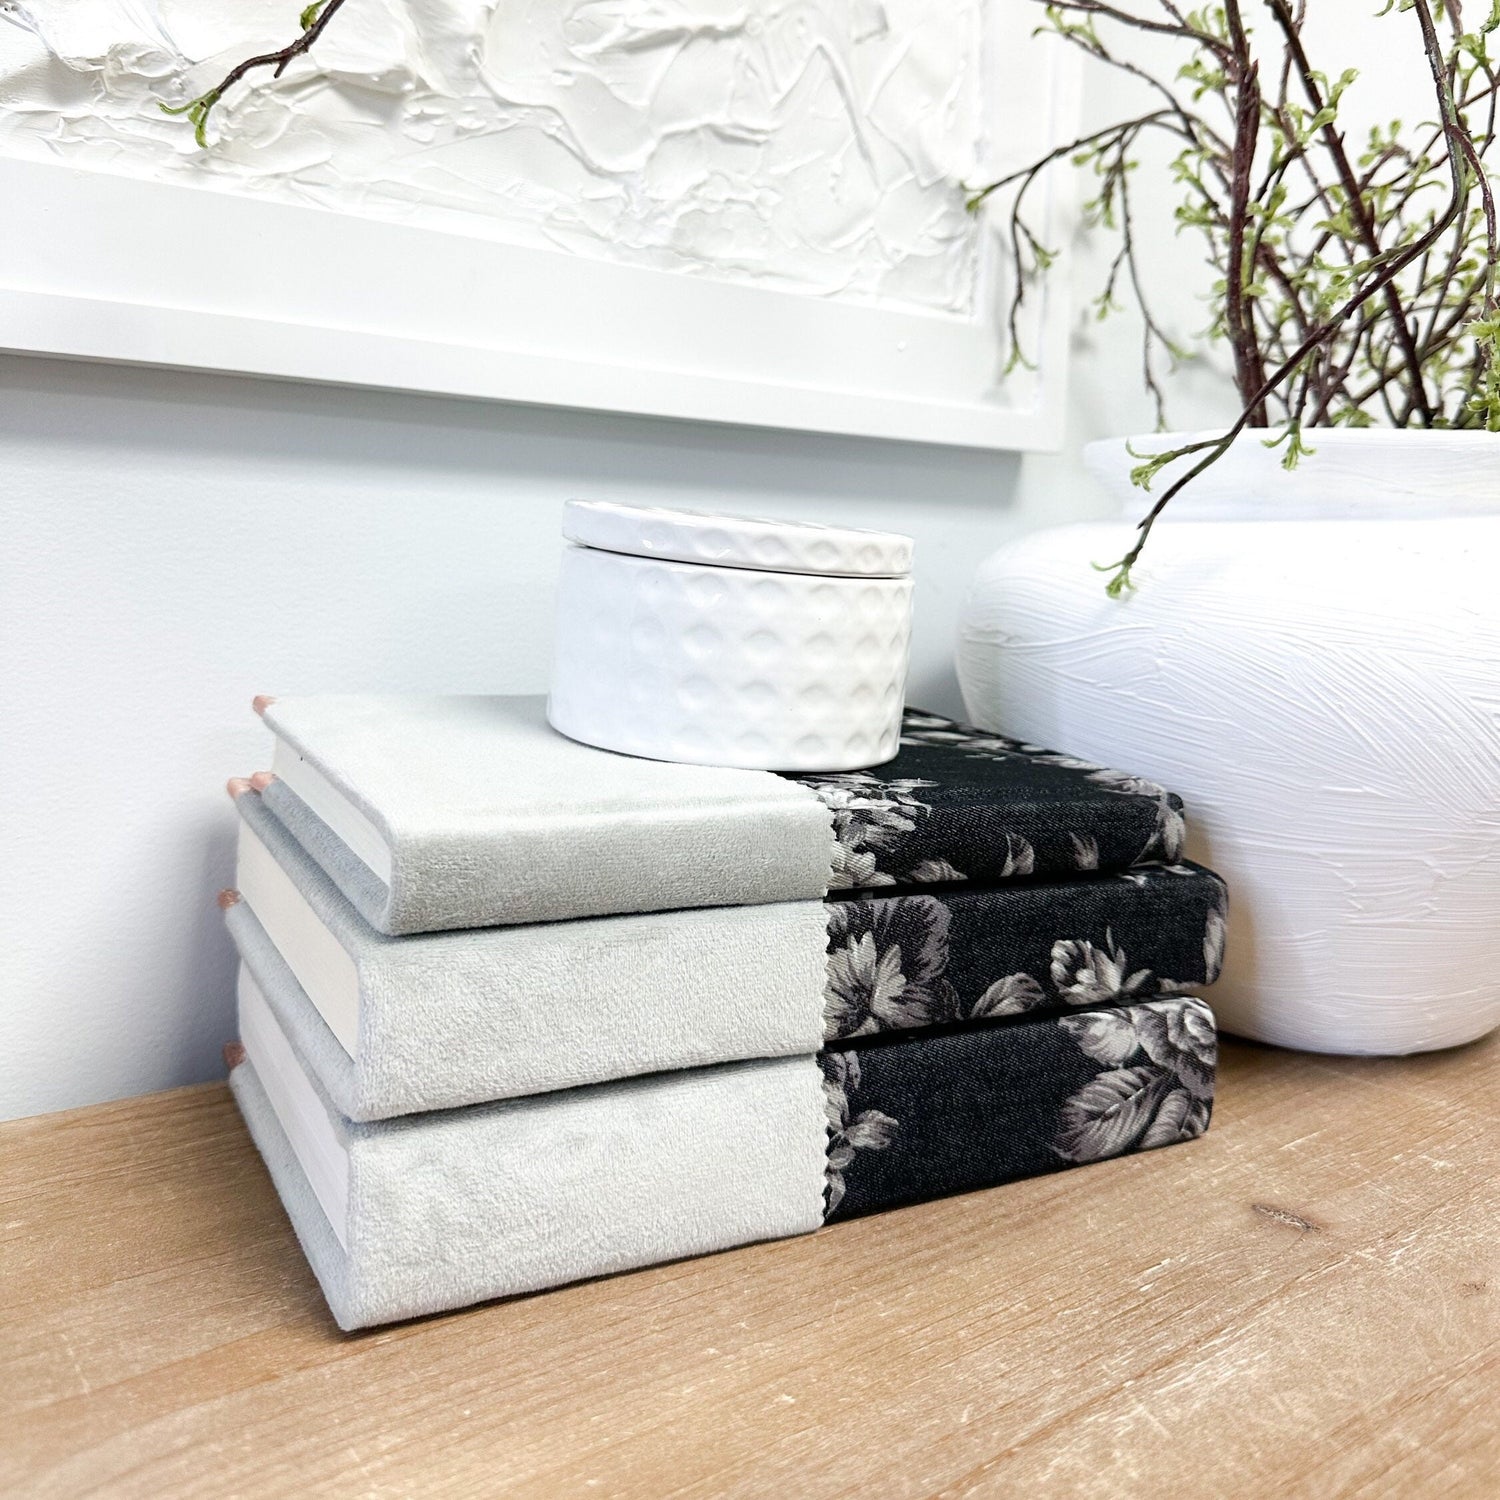 Linen Covered Books for Shelf Decor